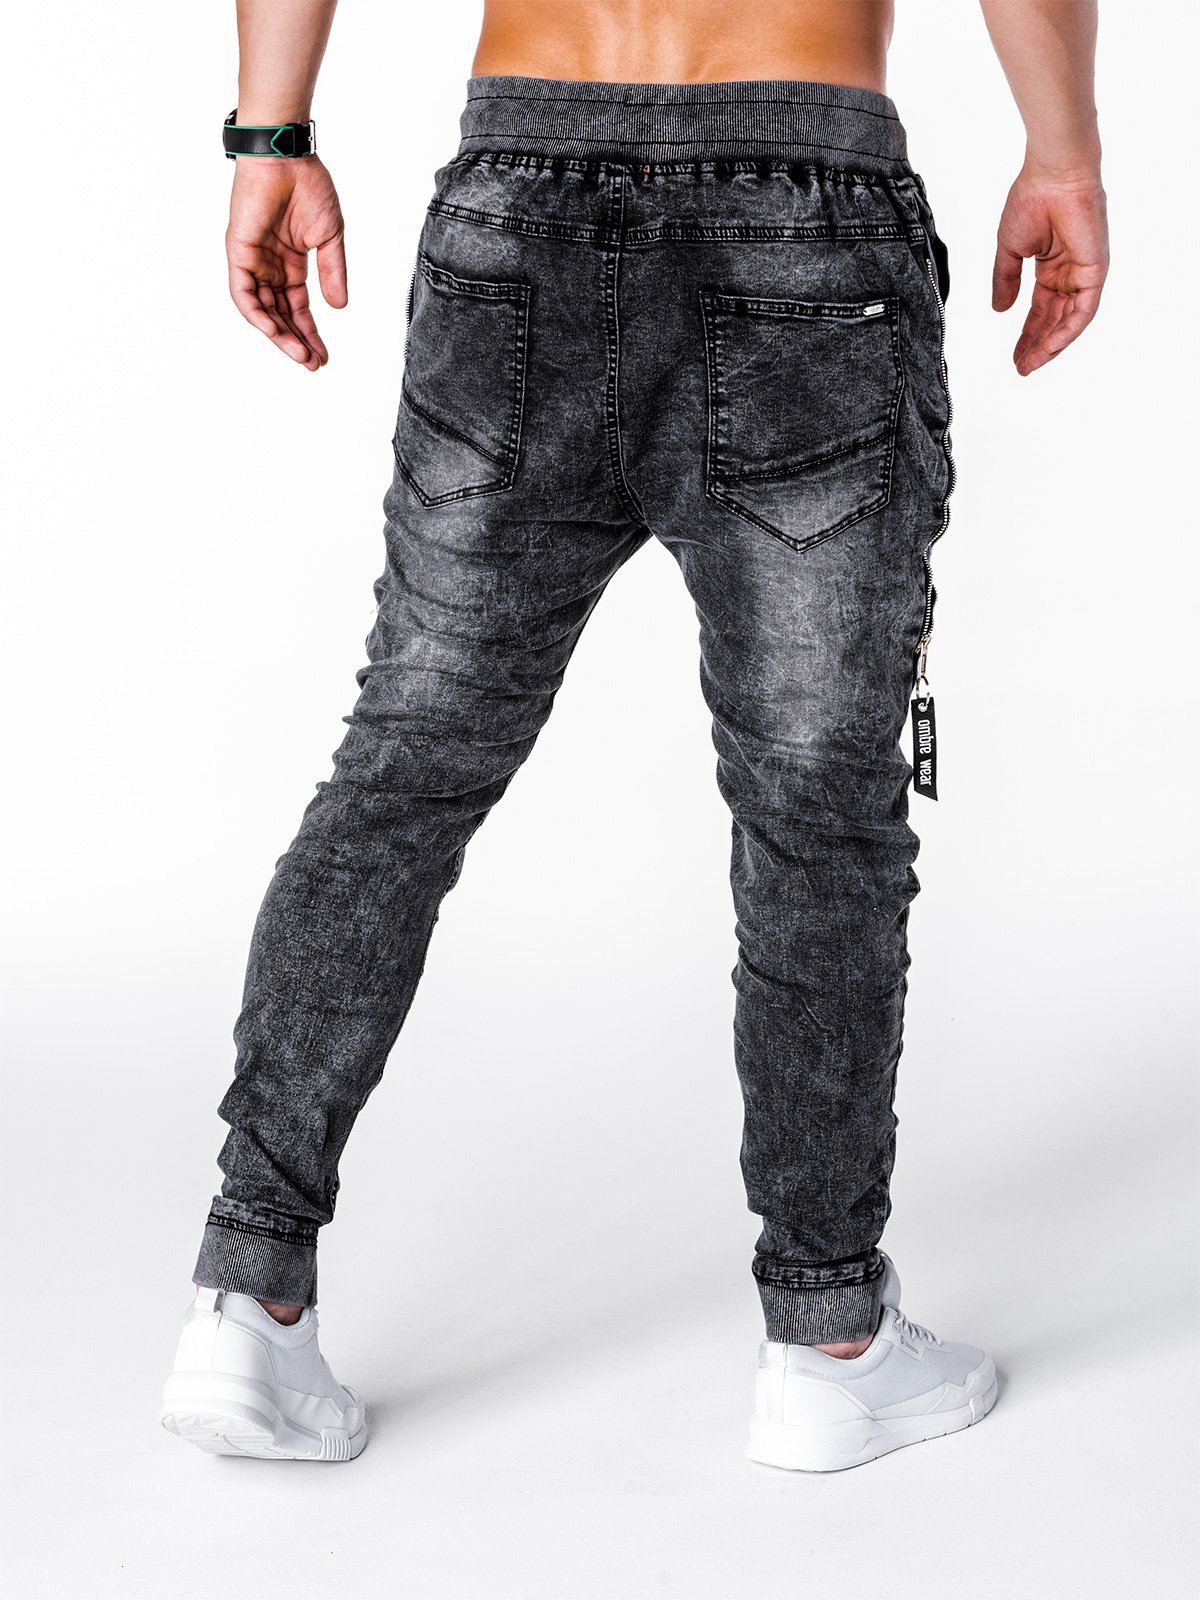 Men's jeans joggers P647 - black | MODONE wholesale - Clothing For Men